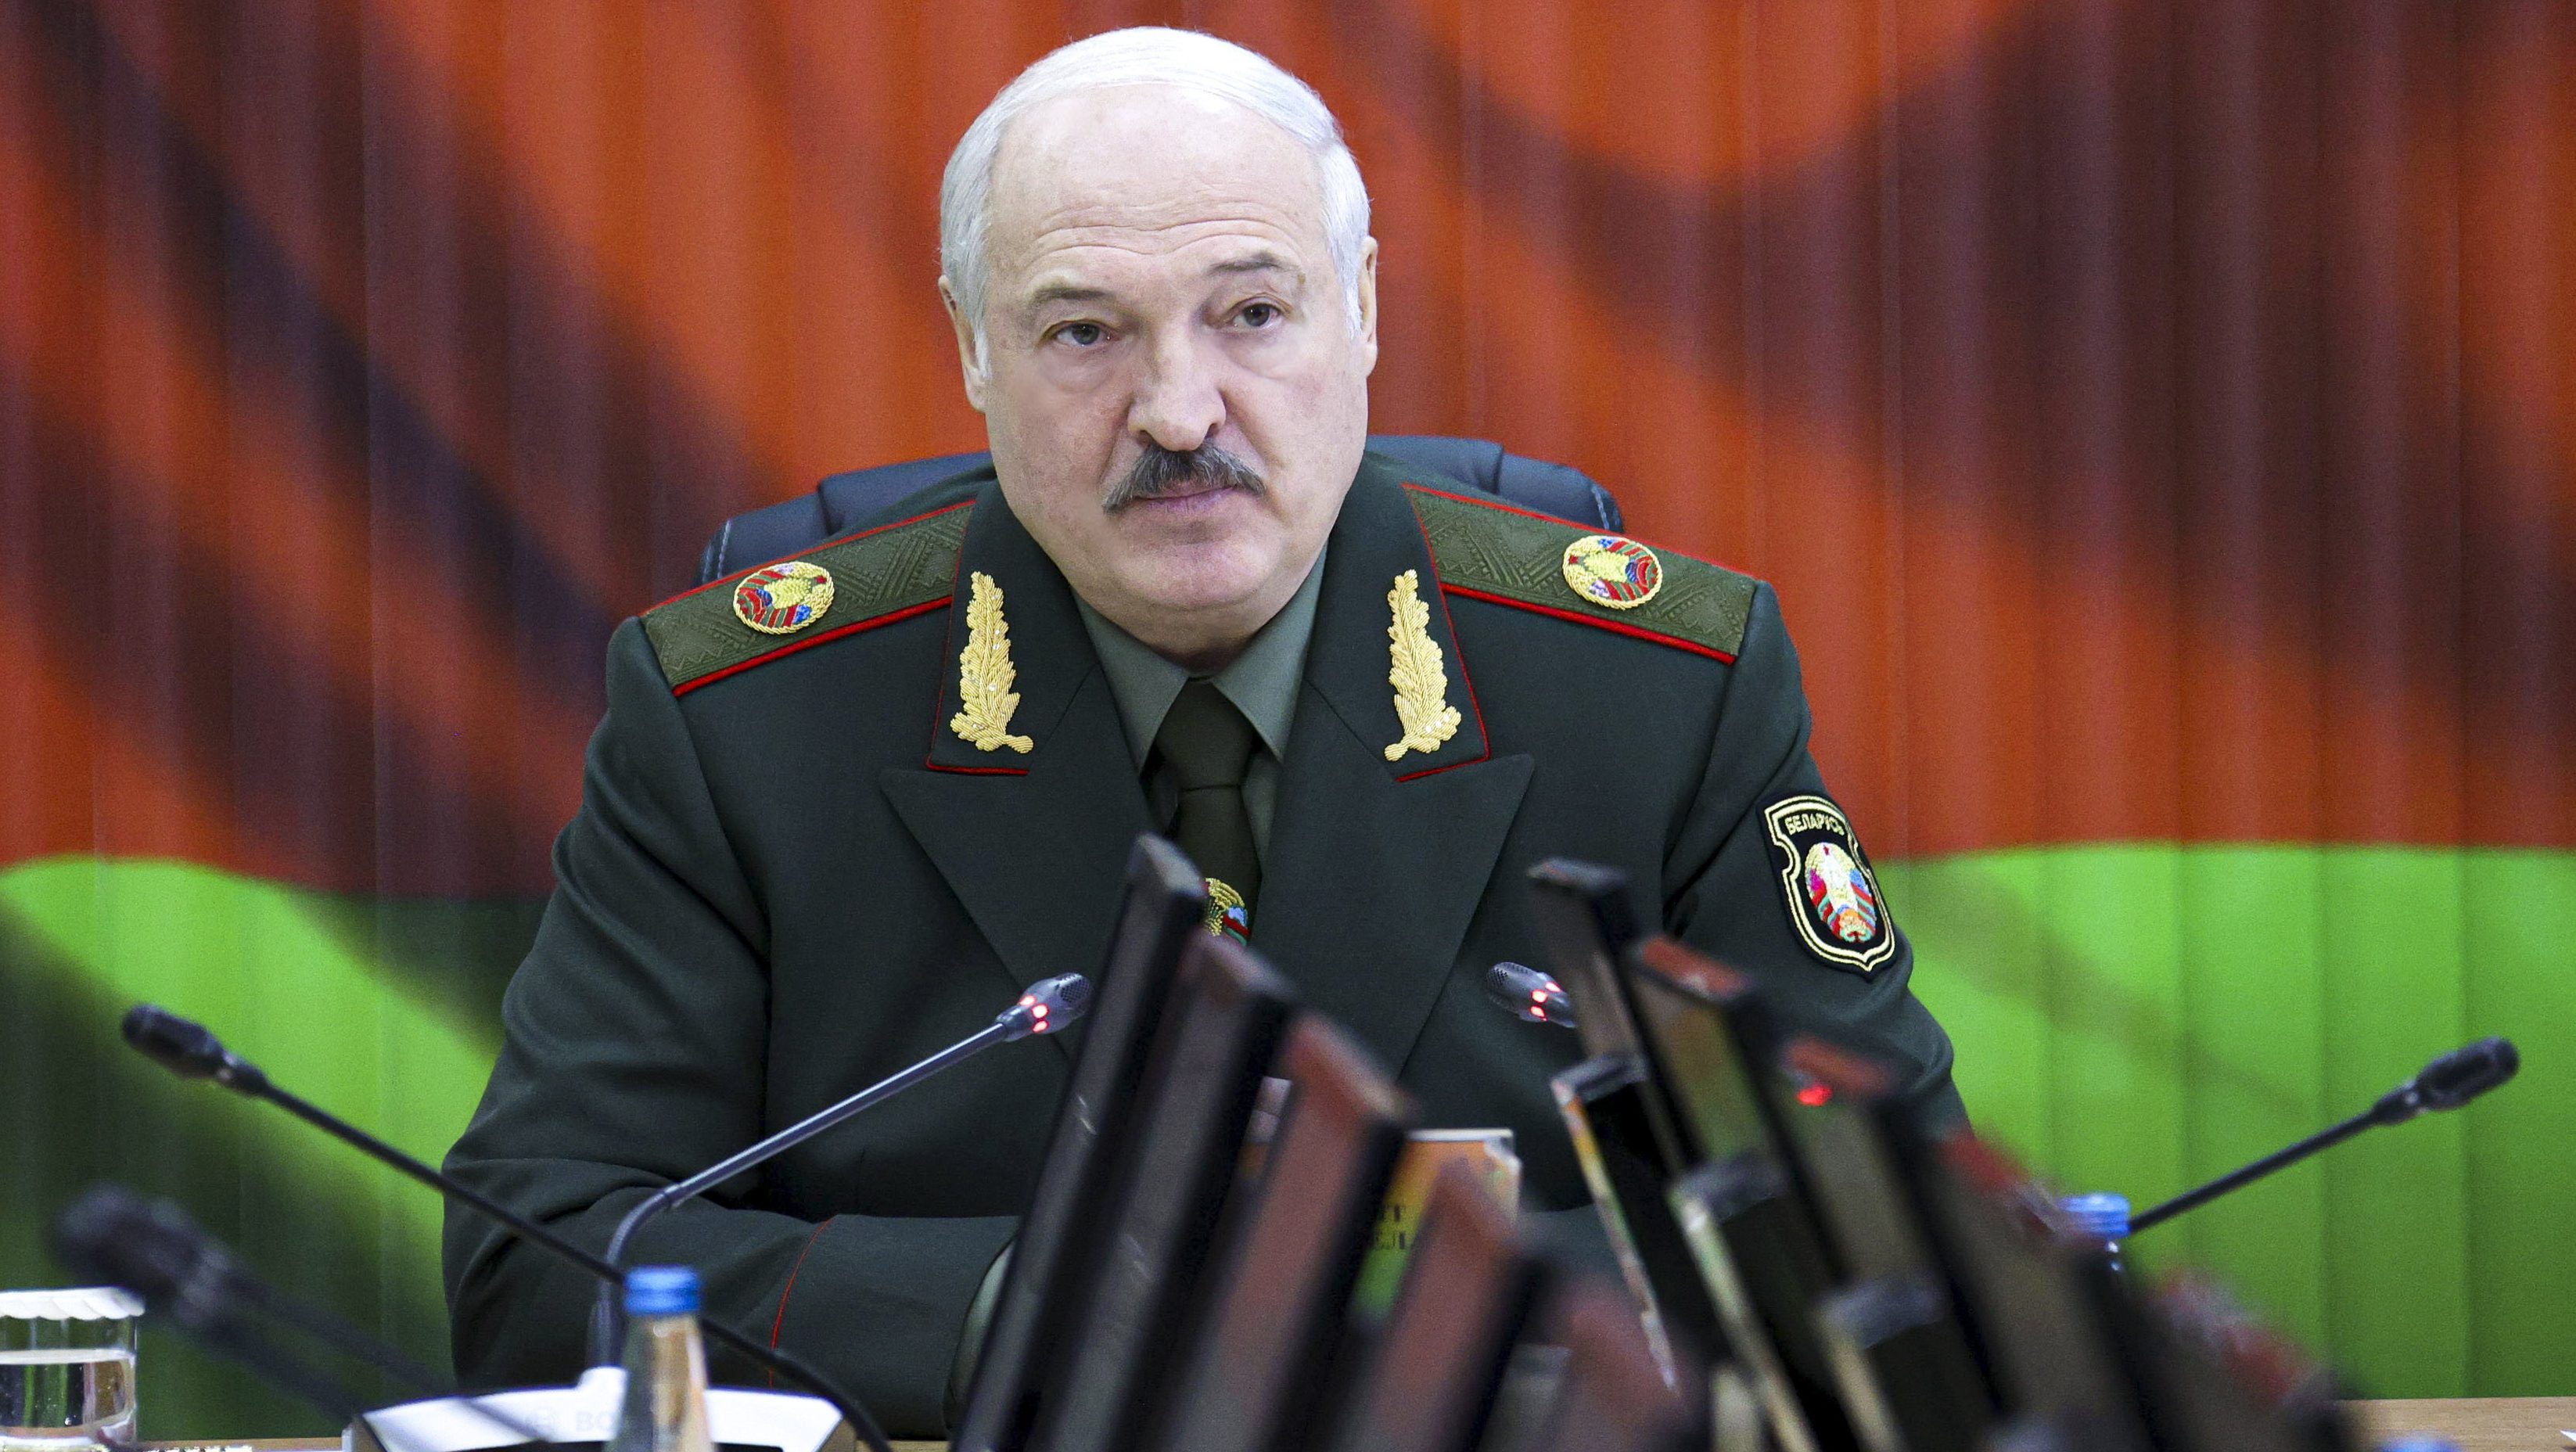 Lukasenka a lengyeleknek: Zárják csak le a határt, és majd meglátják, hogy ki fog többet szenvedni ettől